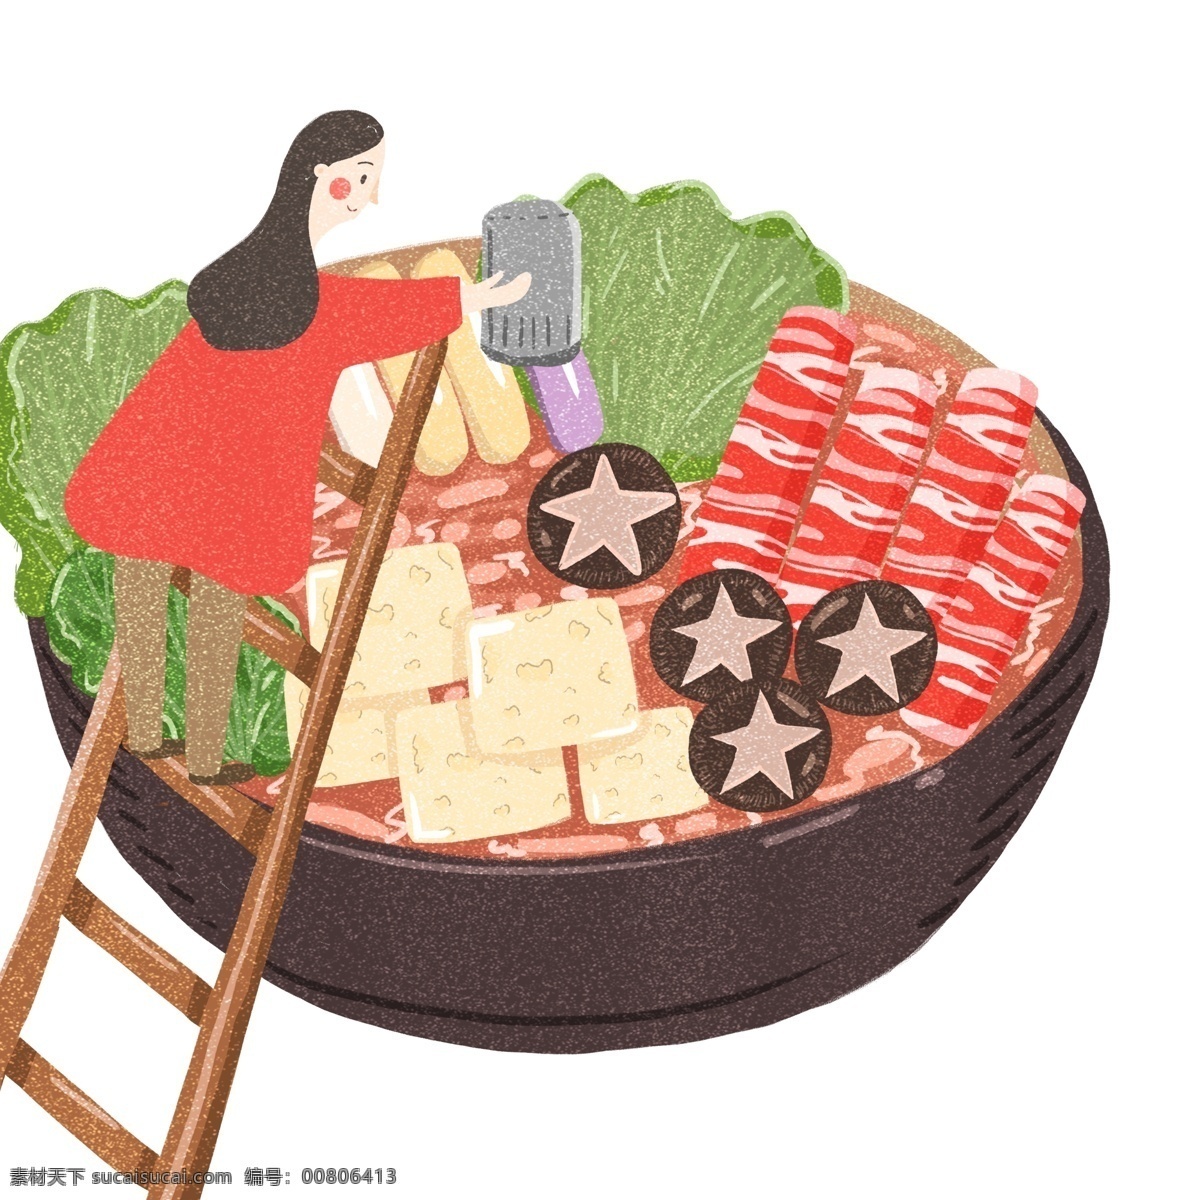 冬日 美食 火锅 卡通 元素 创意 插画 复古 手绘 食物 女孩 梯子 冬季美食